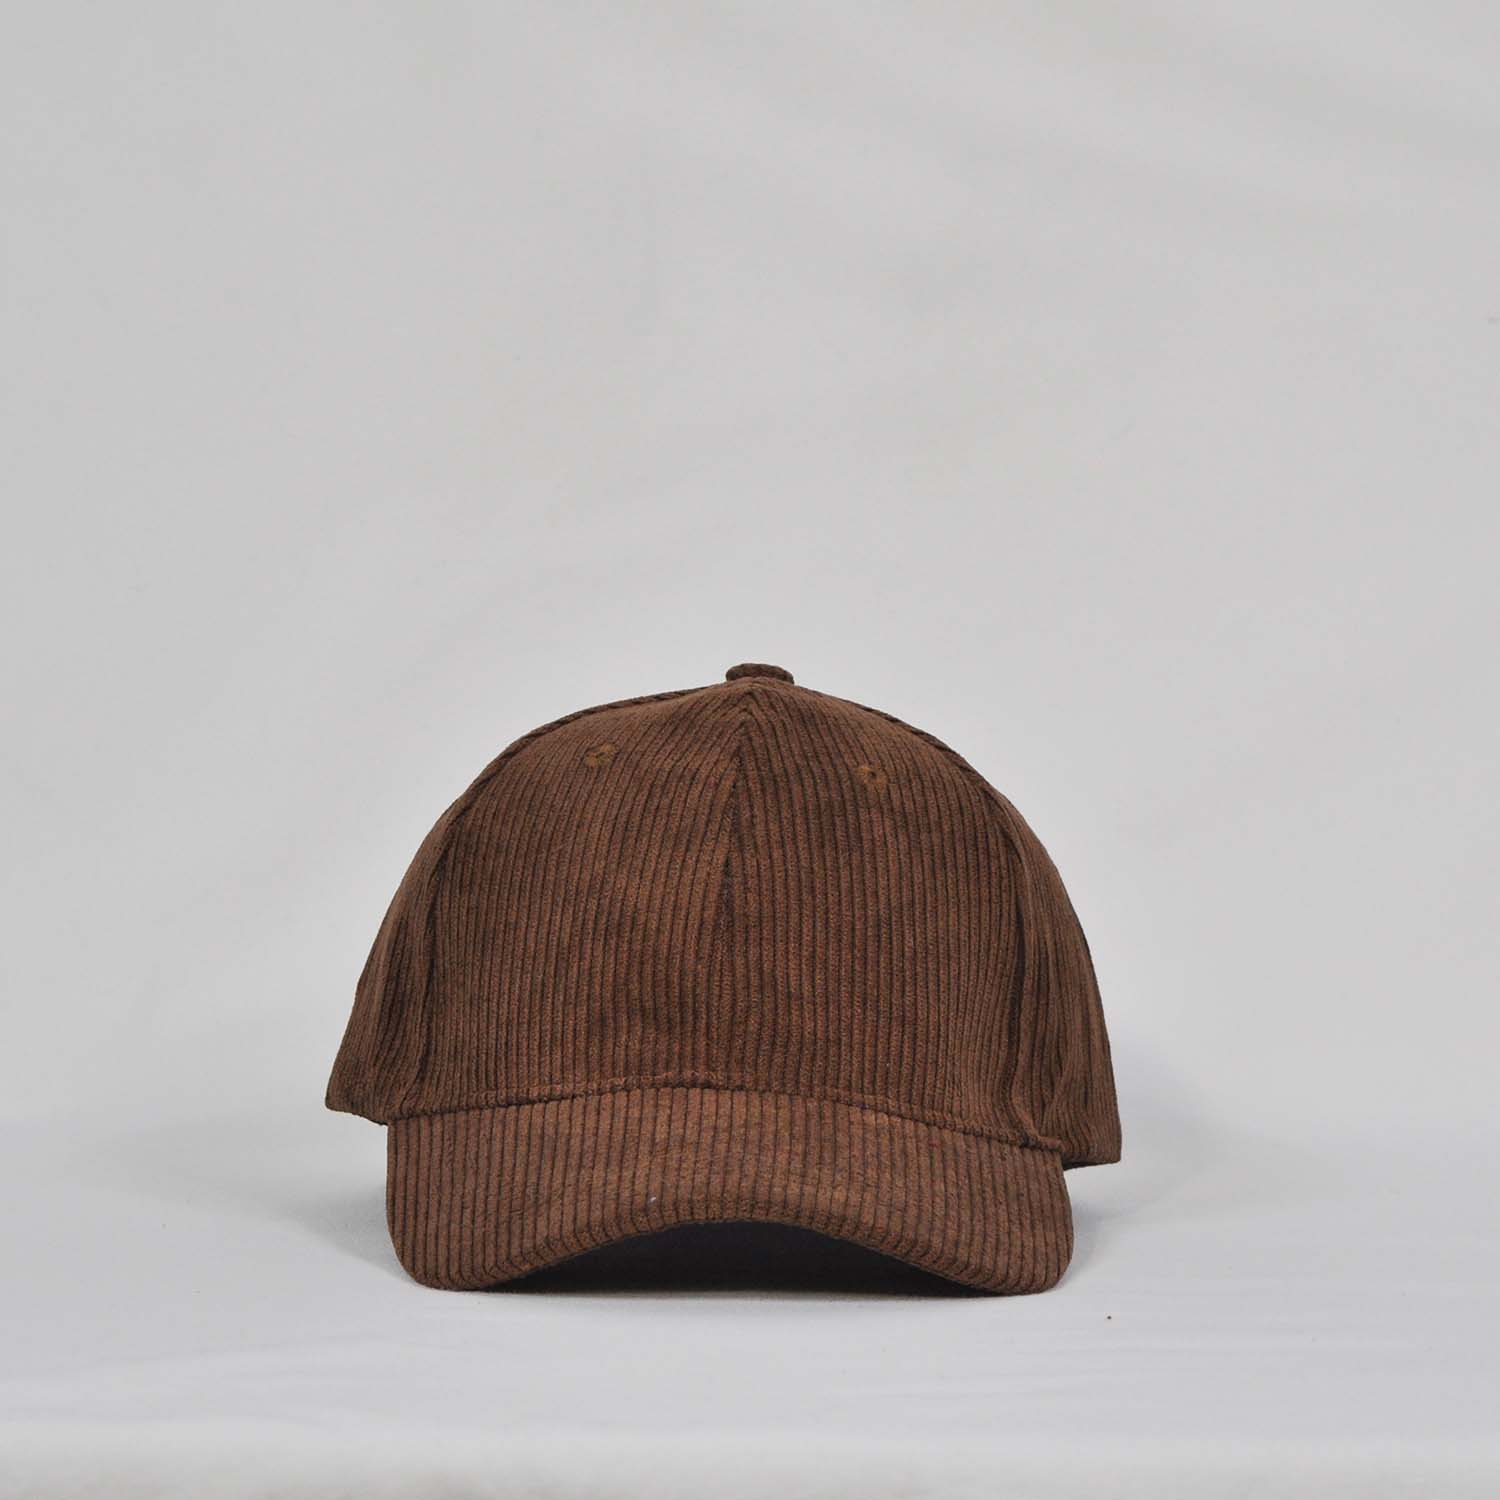 Gorra pana marrón